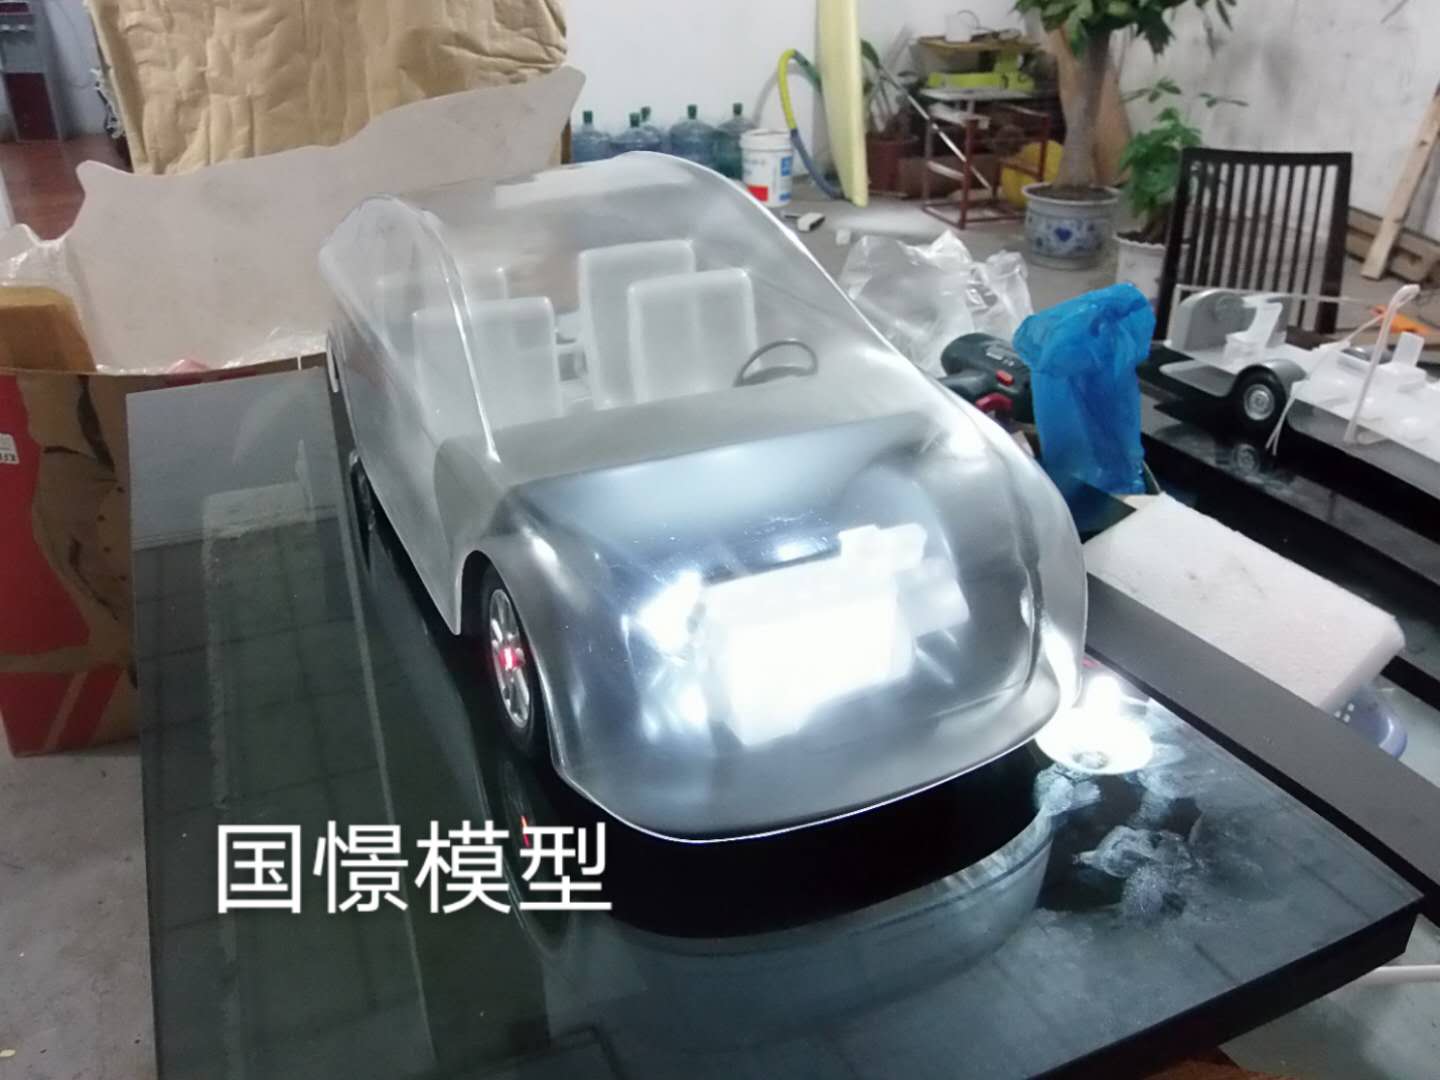 积石山透明车模型